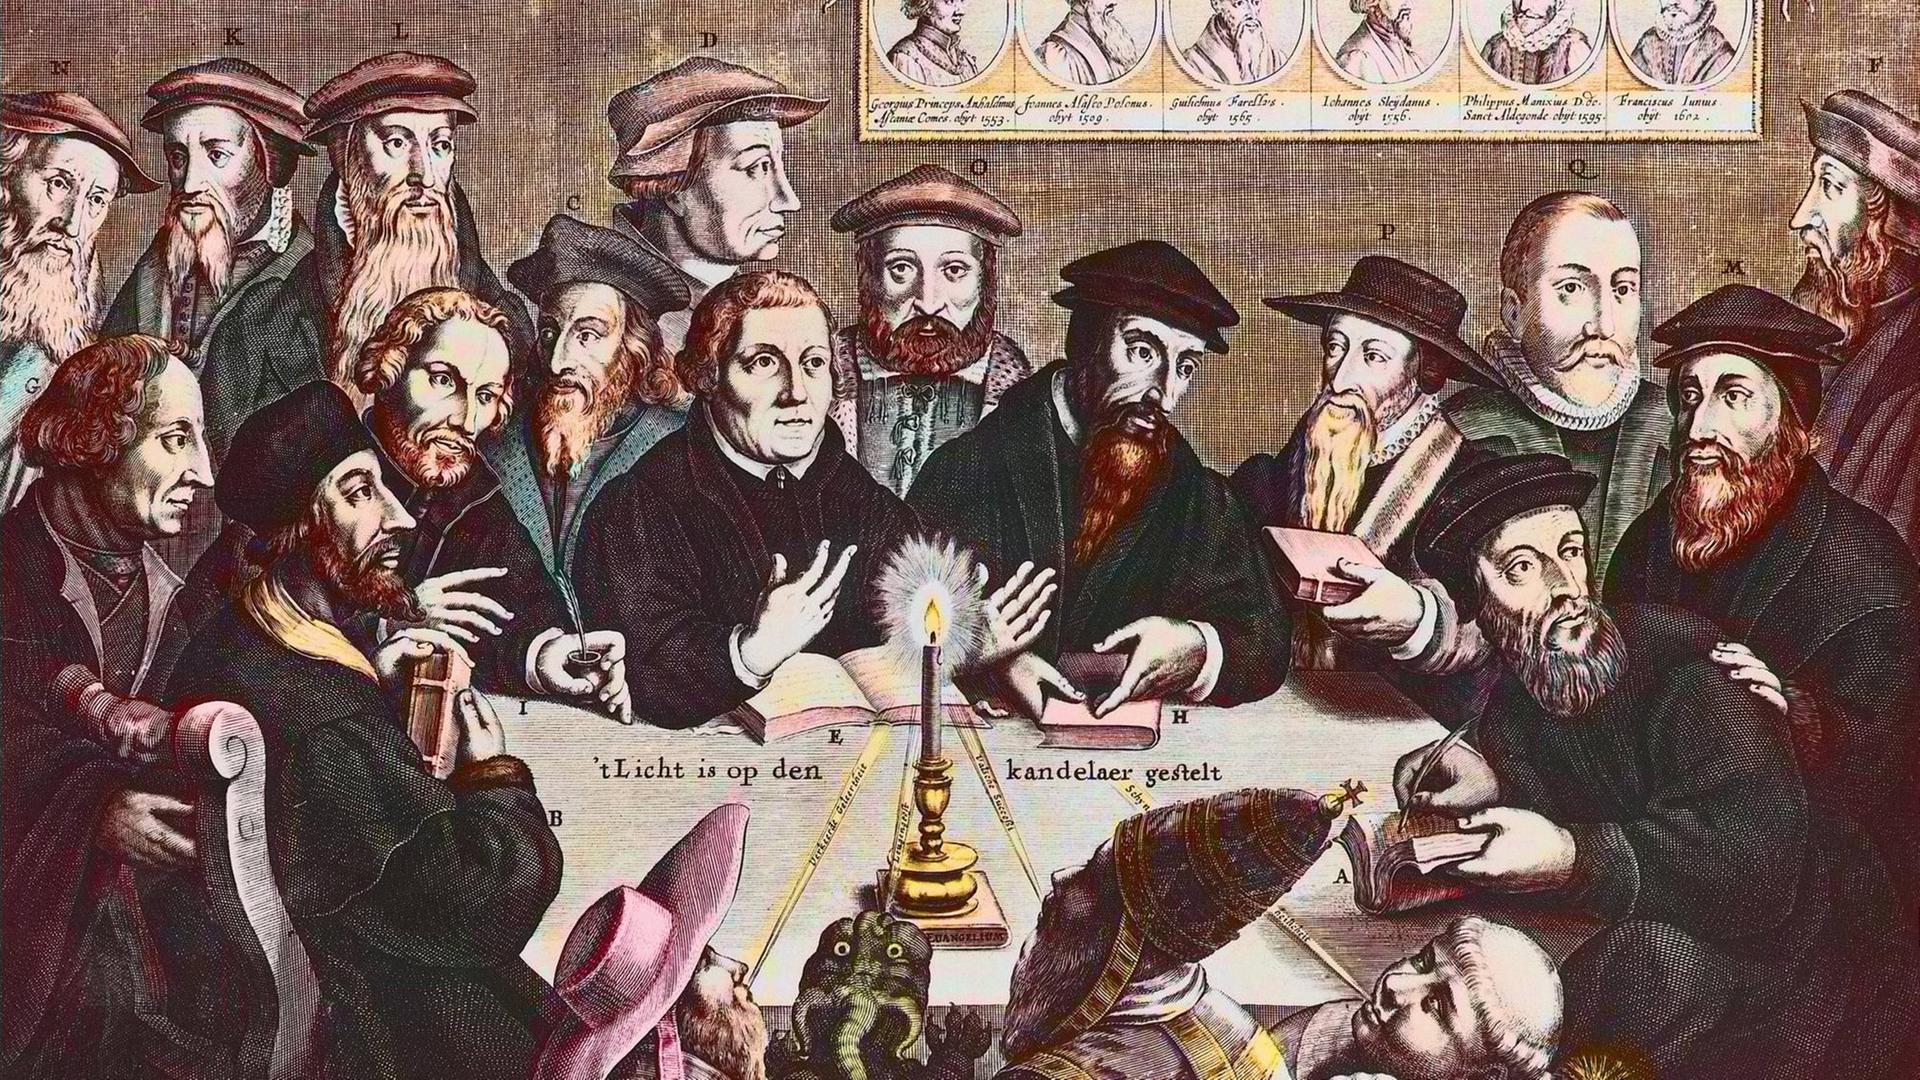 Das Licht ist auf den Kandelaber gestellt - Jan Houwen stellt ein imaginäres Treffen Luthers und Calvins mit anderen Reformatoren dar, darunter auch John Wyclif.